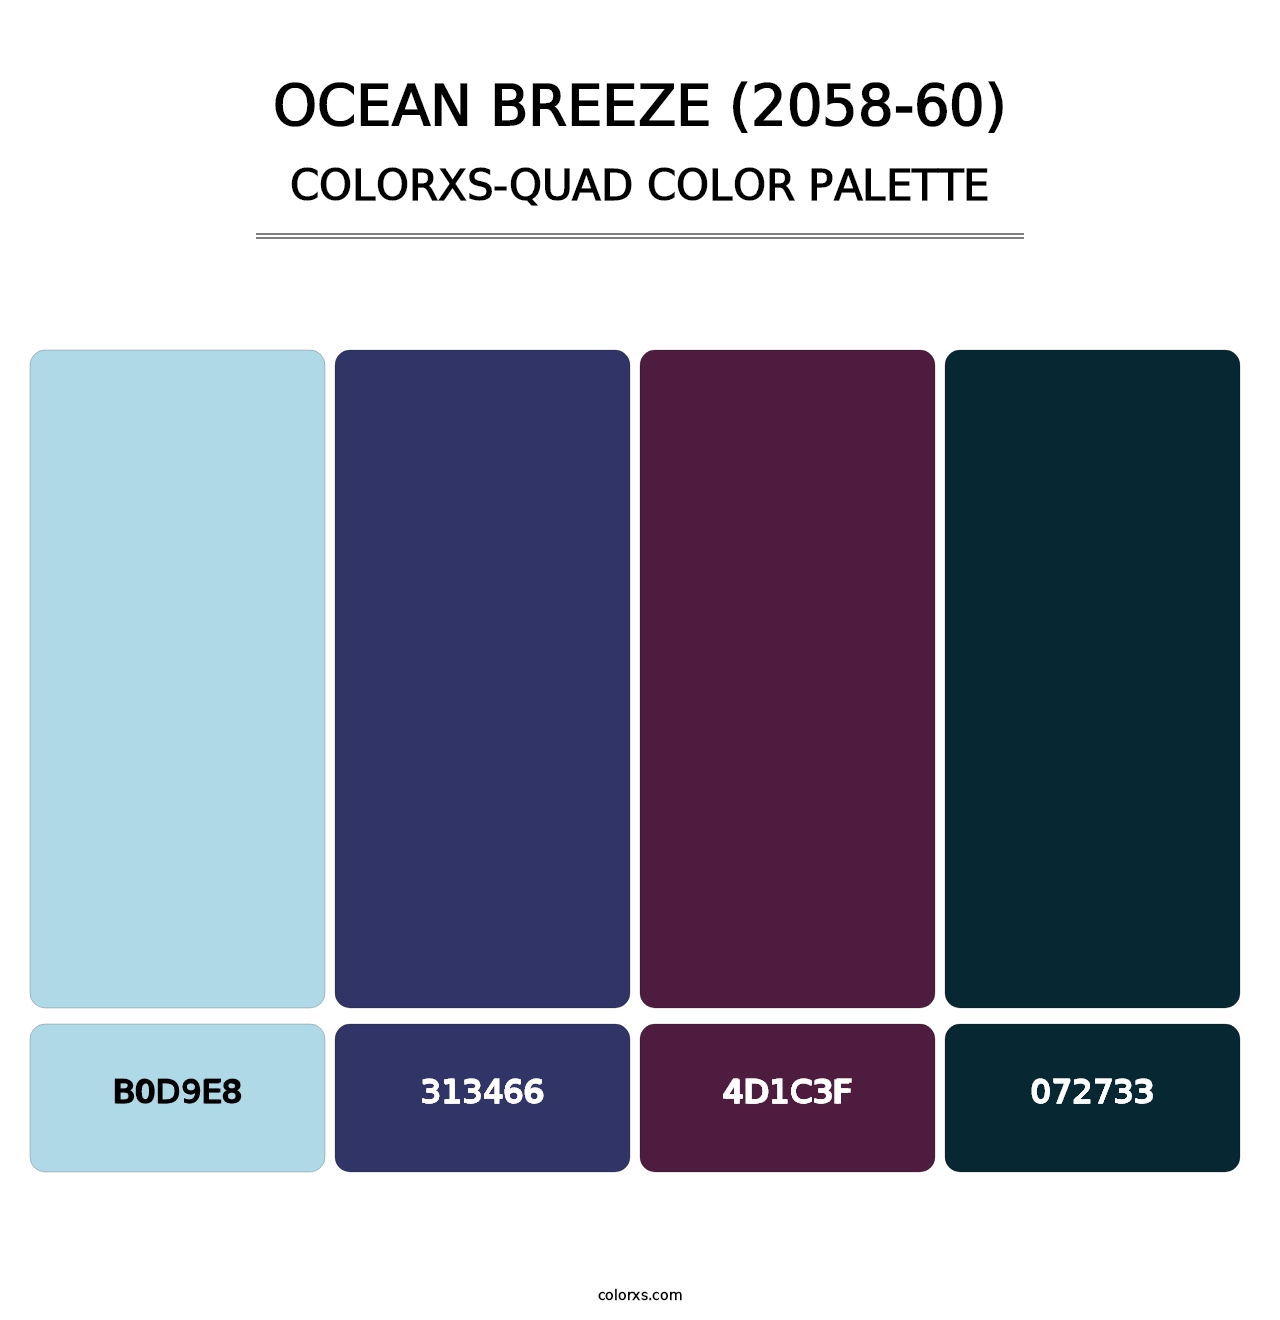 Ocean Breeze (2058-60) - Colorxs Quad Palette